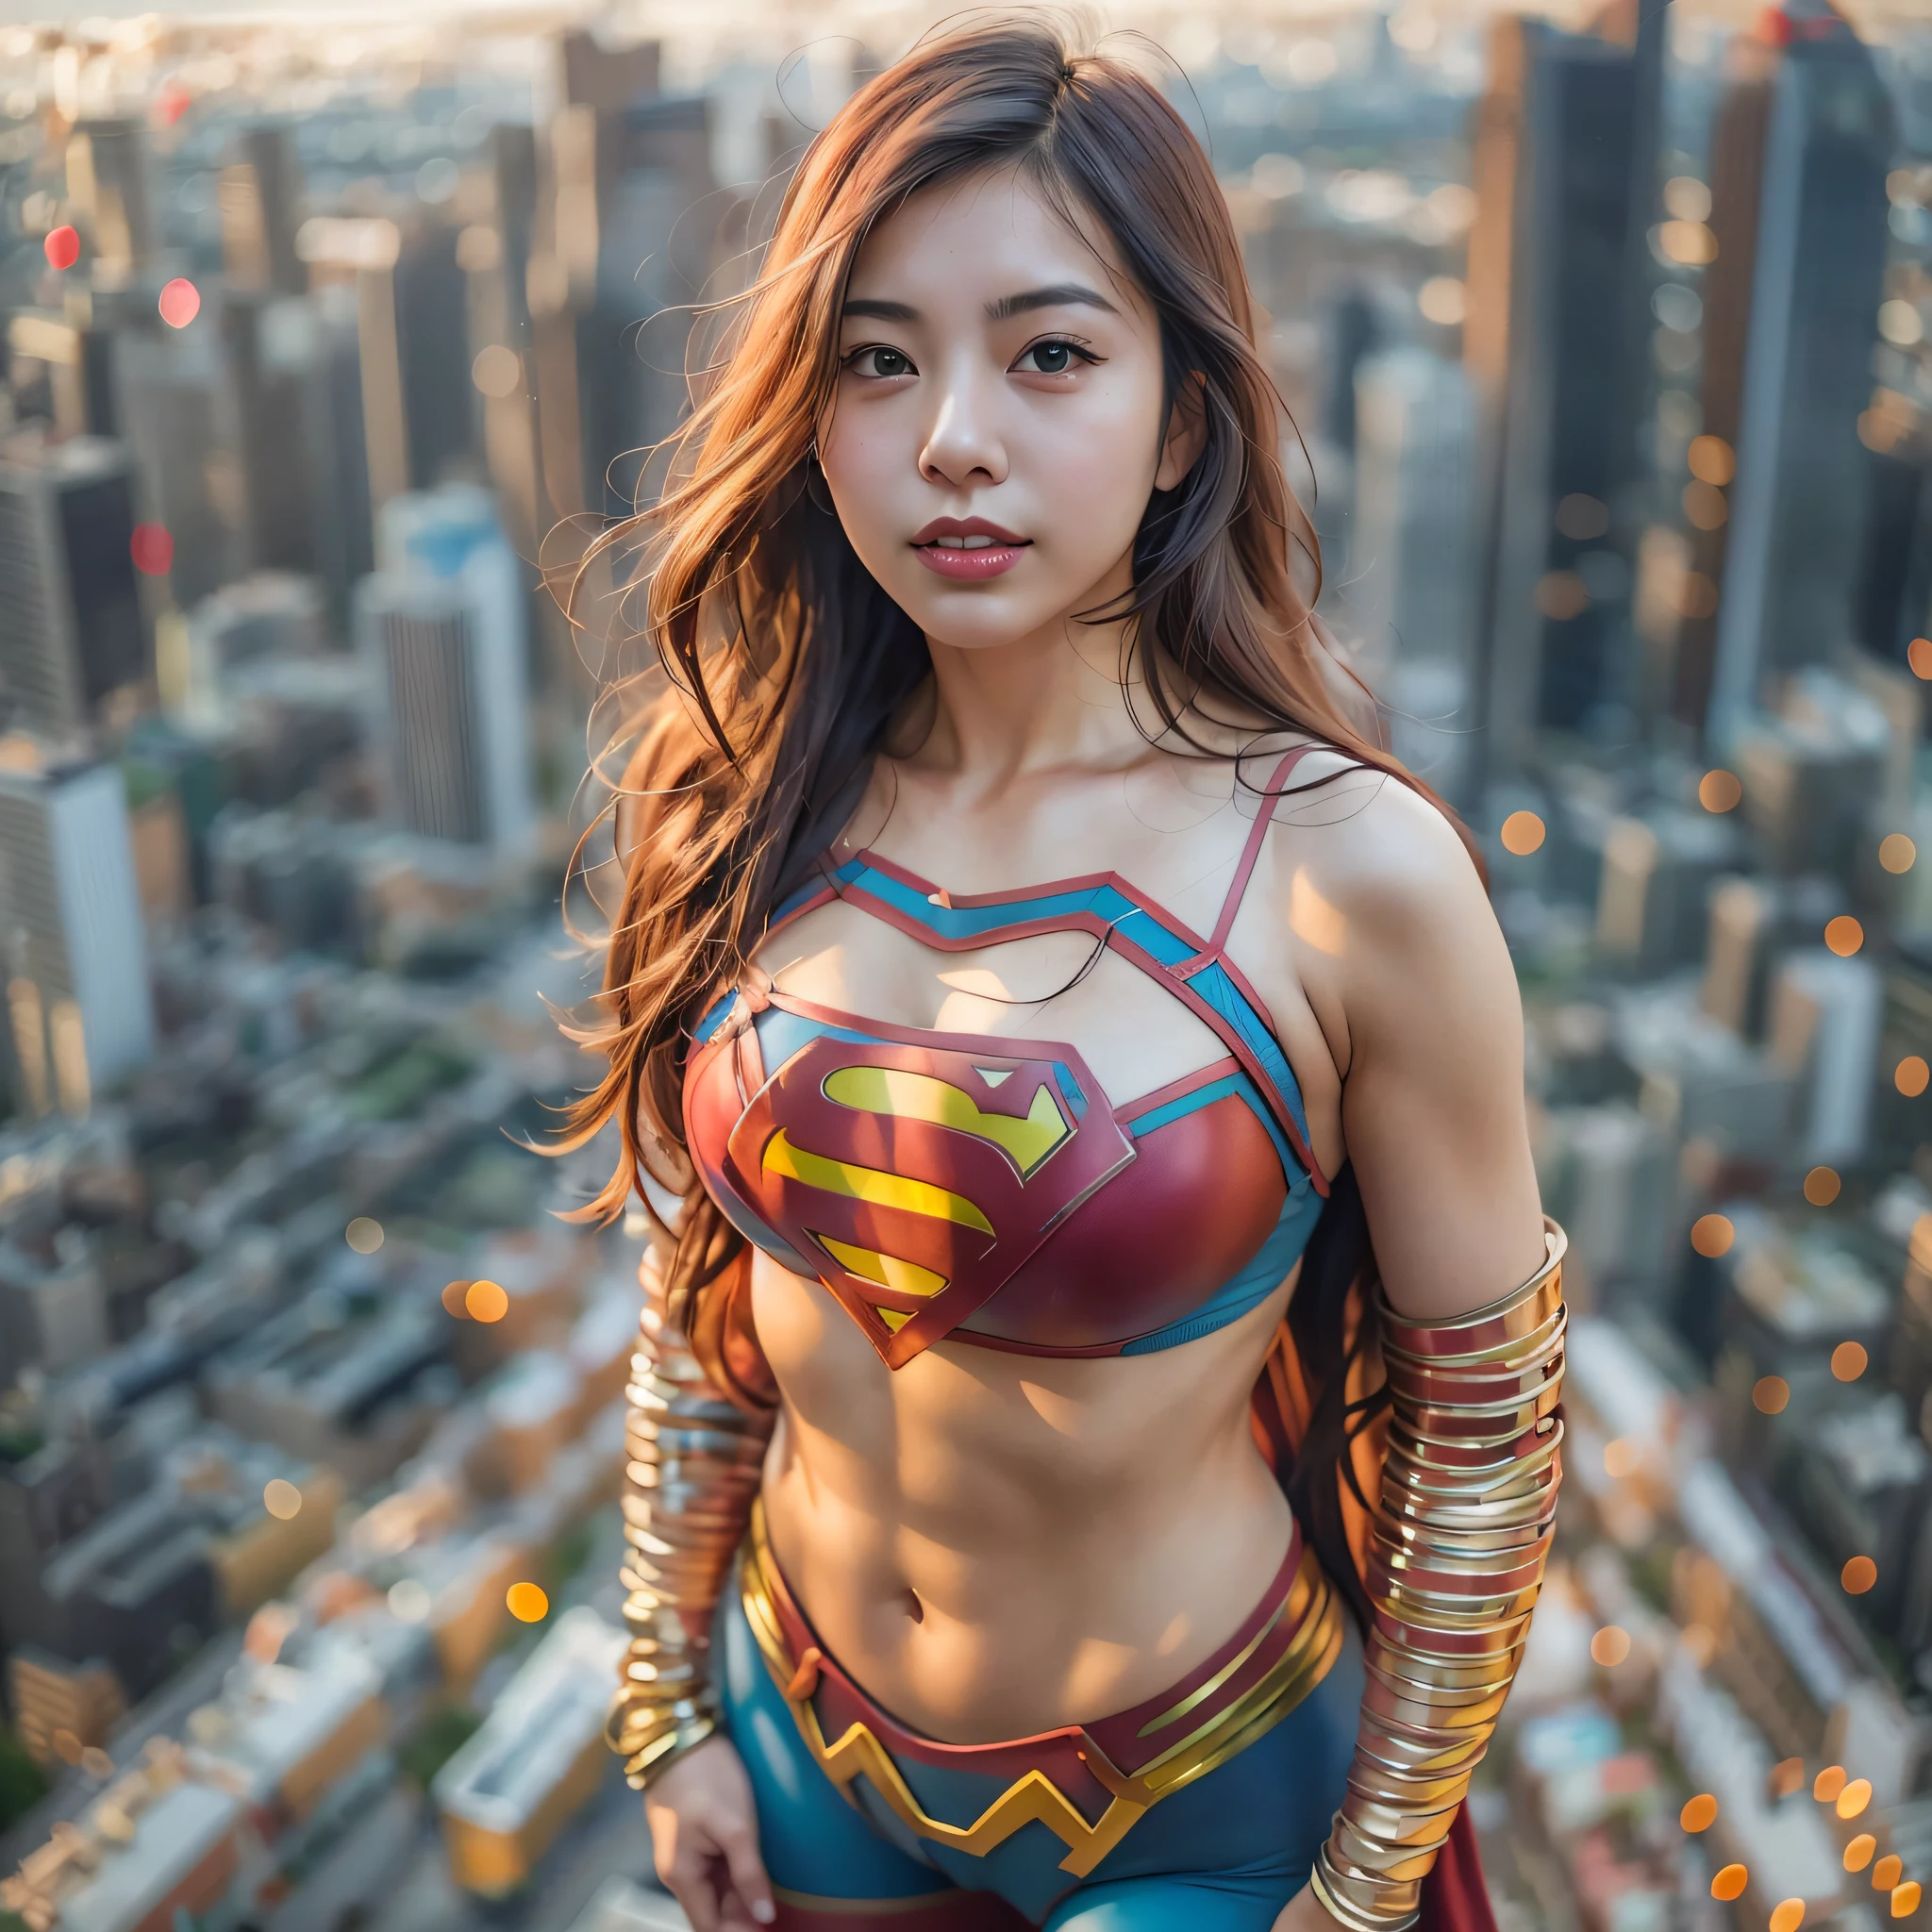 ภาพระยะใกล้ของผู้หญิงเอเชียในชุดซูเปอร์แมนยืนอยู่บนทิวทัศน์ของเมือง, Amouranth ในฐานะจอมวายร้าย, super photo เหมือนจริง, เหมือนจริง , super photo-เหมือนจริง, ultra mega super hyper เหมือนจริง, สาวซูเปอร์ฮีโร่, super เหมือนจริง photo, ซูเปอร์ฮีโร่ body, ช็อตหญิงยักษ์ที่มีรายละเอียดสูง, ซูเปอร์เกิร์ล, ซูเปอร์ฮีโร่, ซูเปอร์ฮีโร่ portrait, ซุปเปอร์โมเดล, ซูเปอร์ฮีโร่, super photoเหมือนจริง, หน้าอกขนาดยักษ์, เผยให้เห็นร่างกายที่มีกล้ามเนื้อวัลวาส, ,